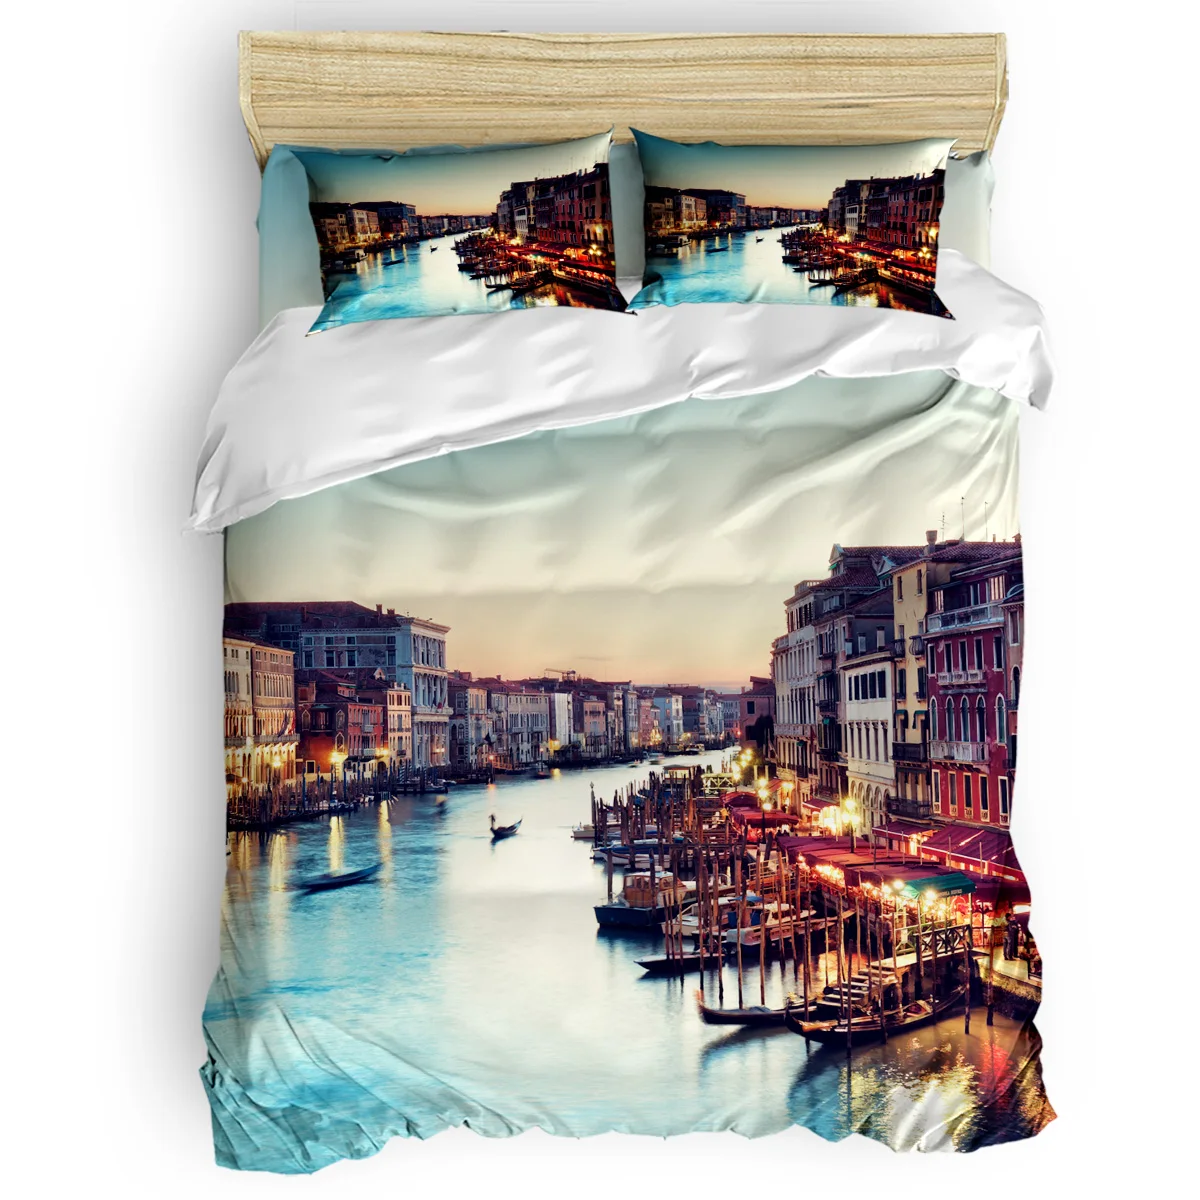 

Италия Романтический город Венеция лодка река Ночной пейзаж пододеяльник набор 2/3/26 шт Комплект постельного белья простыня наволочки